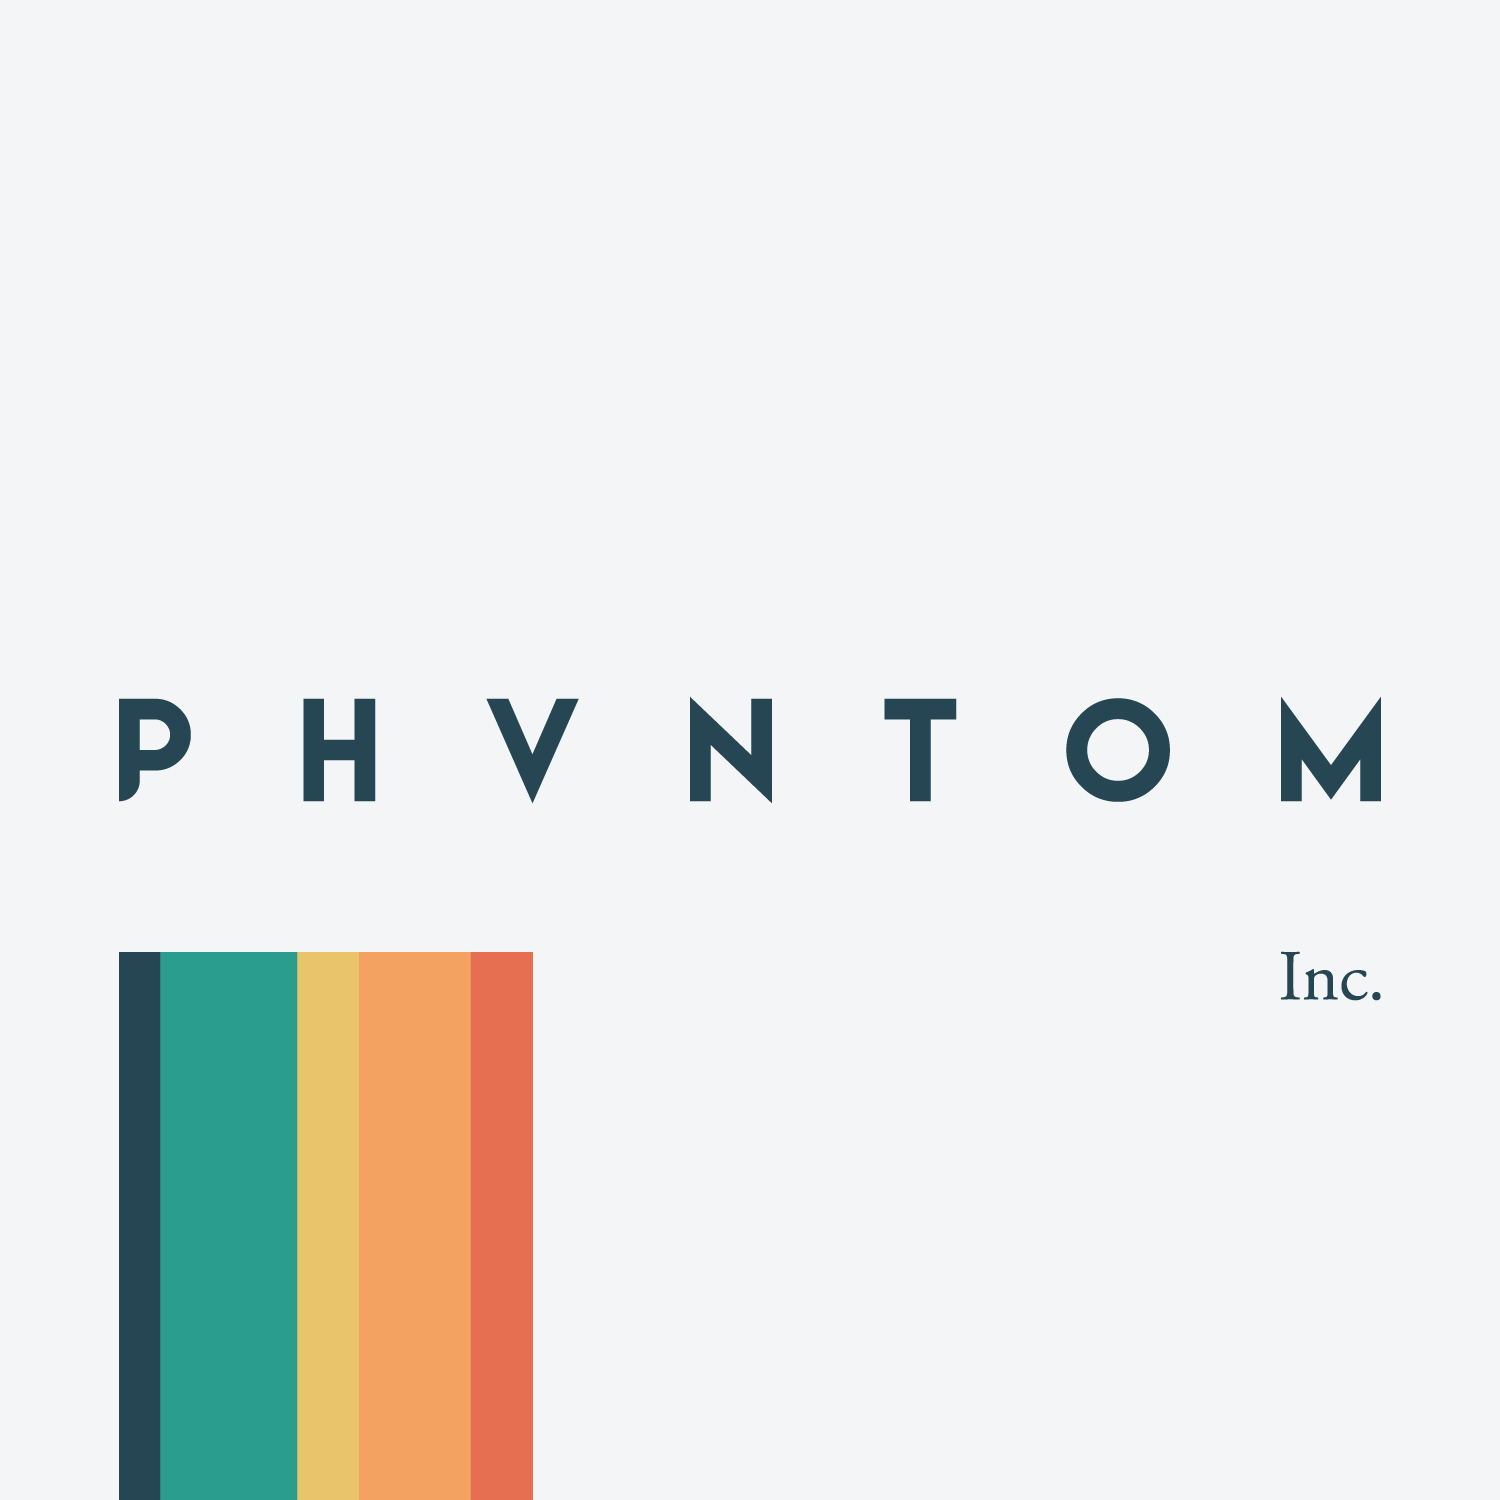 Company logo of Phvntom Inc.